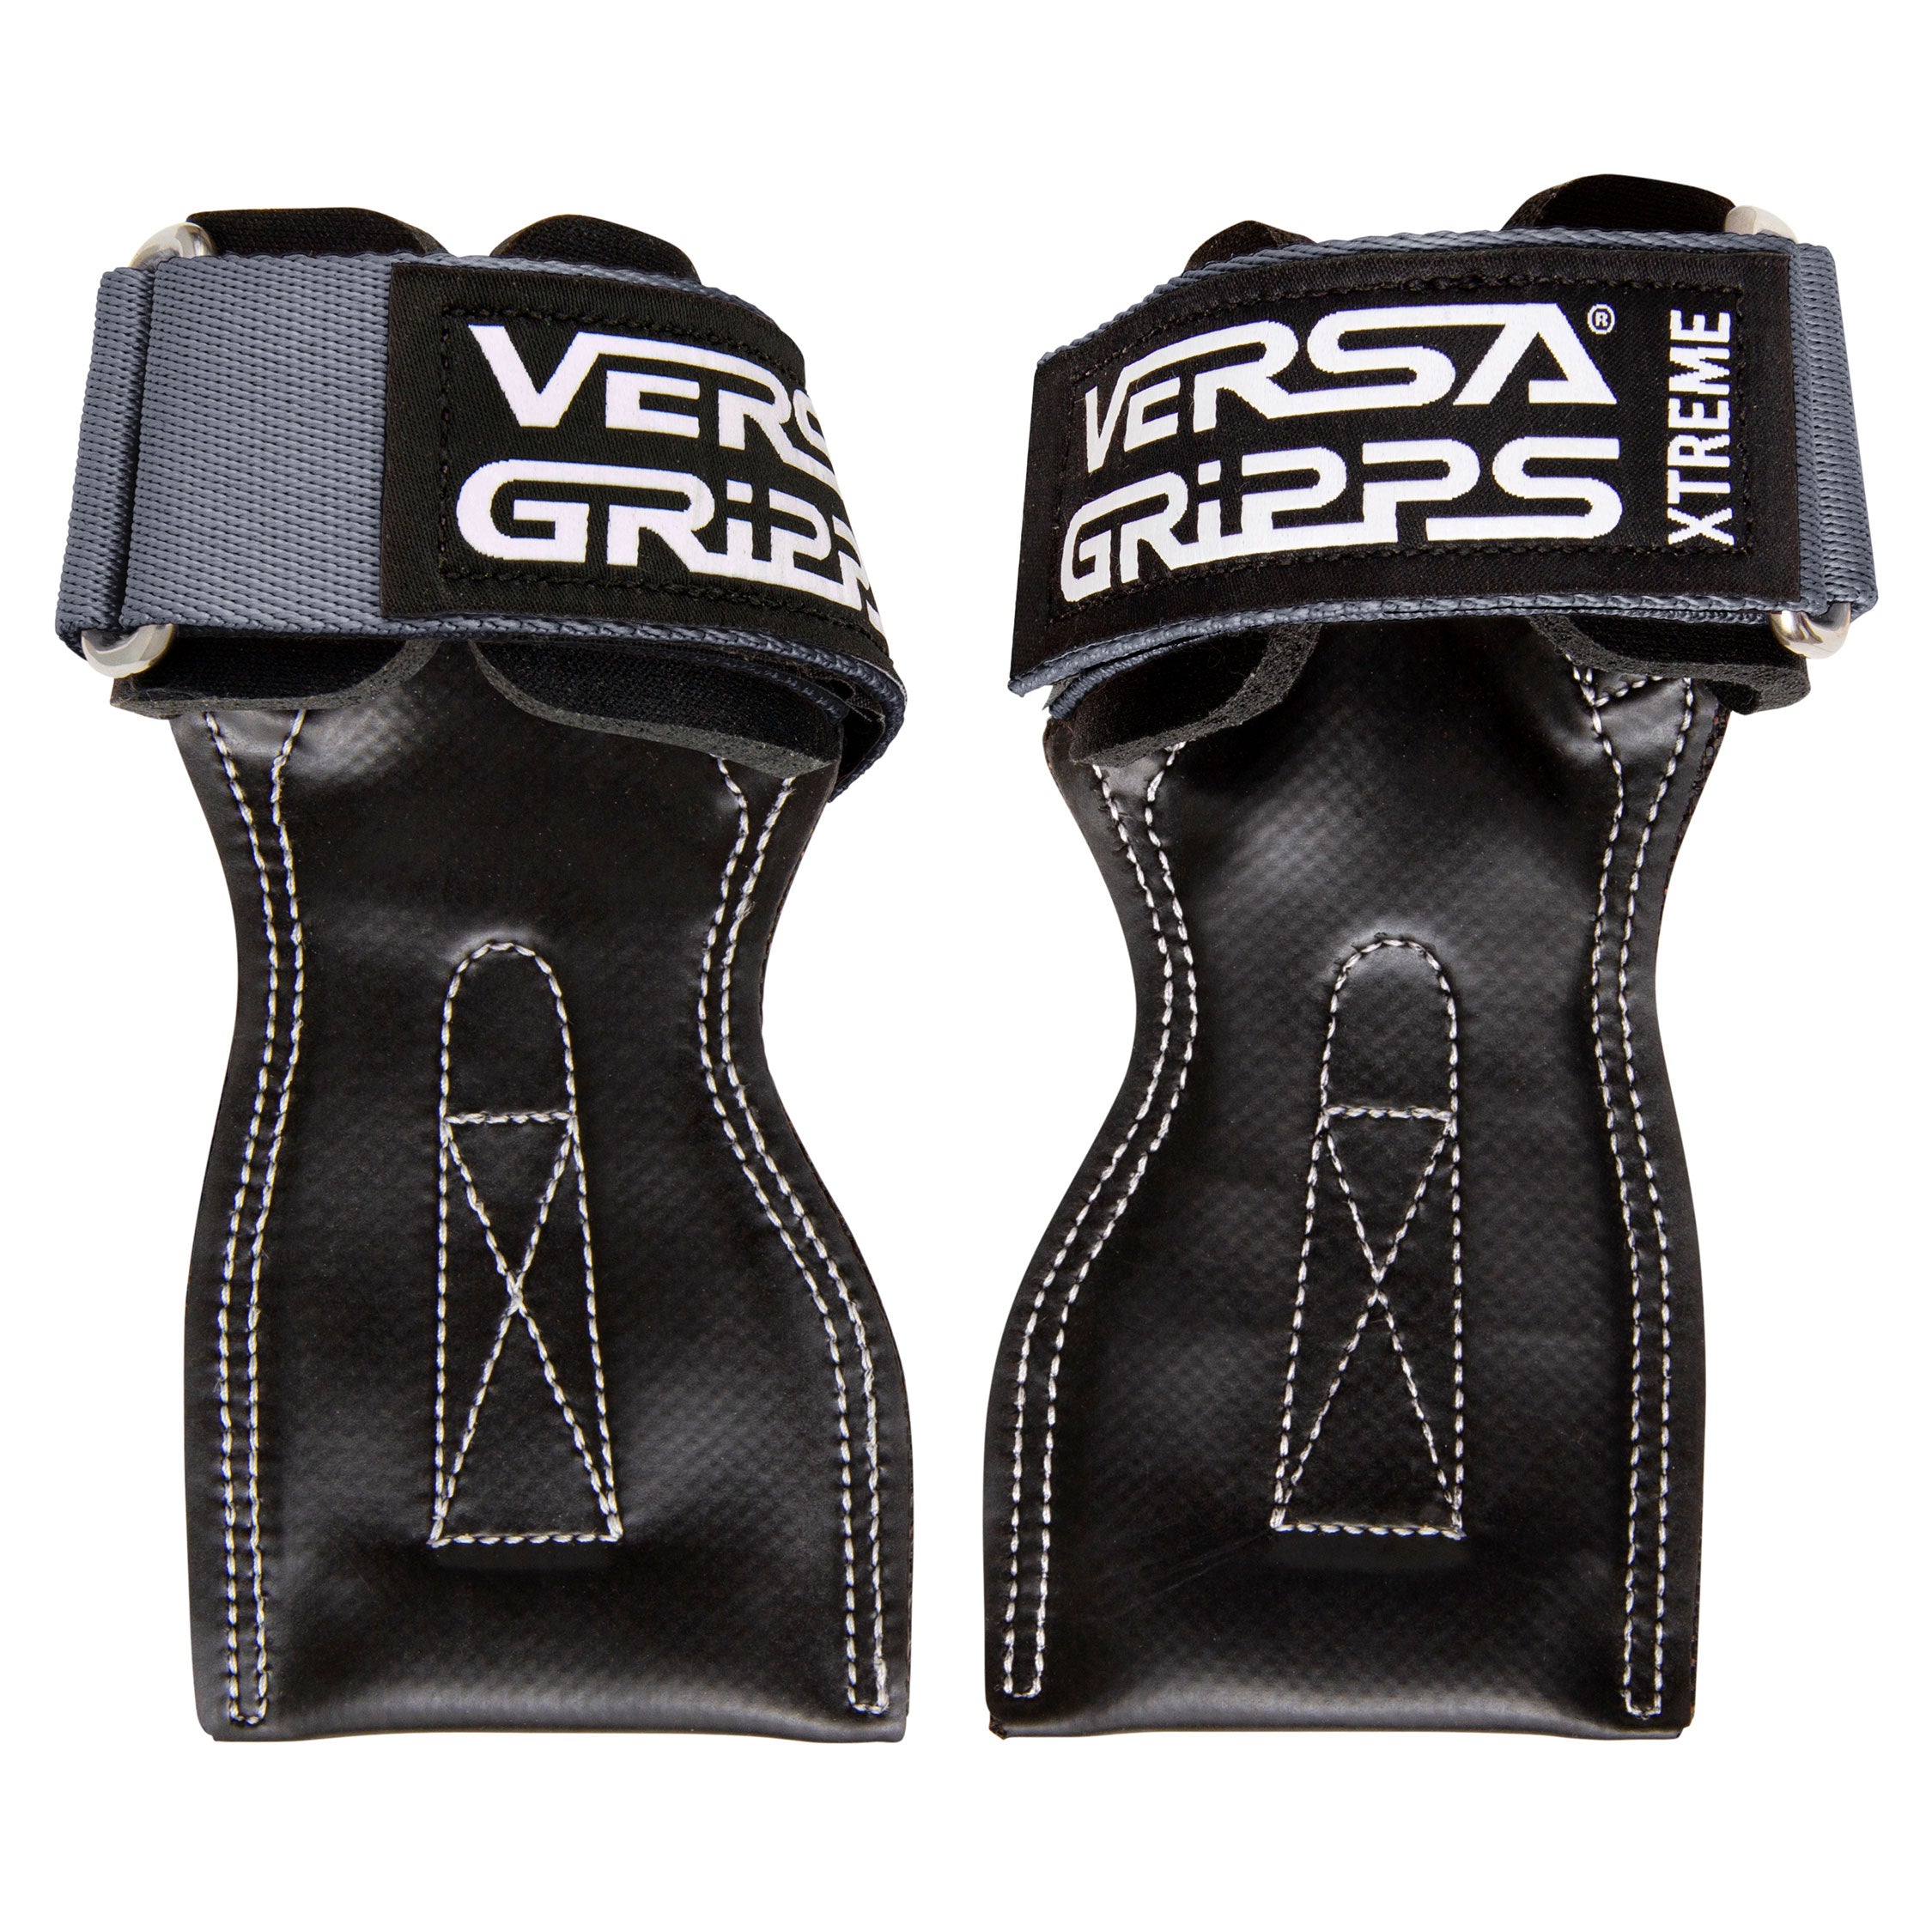 Versa Gripps Gym Gloves & Accessories